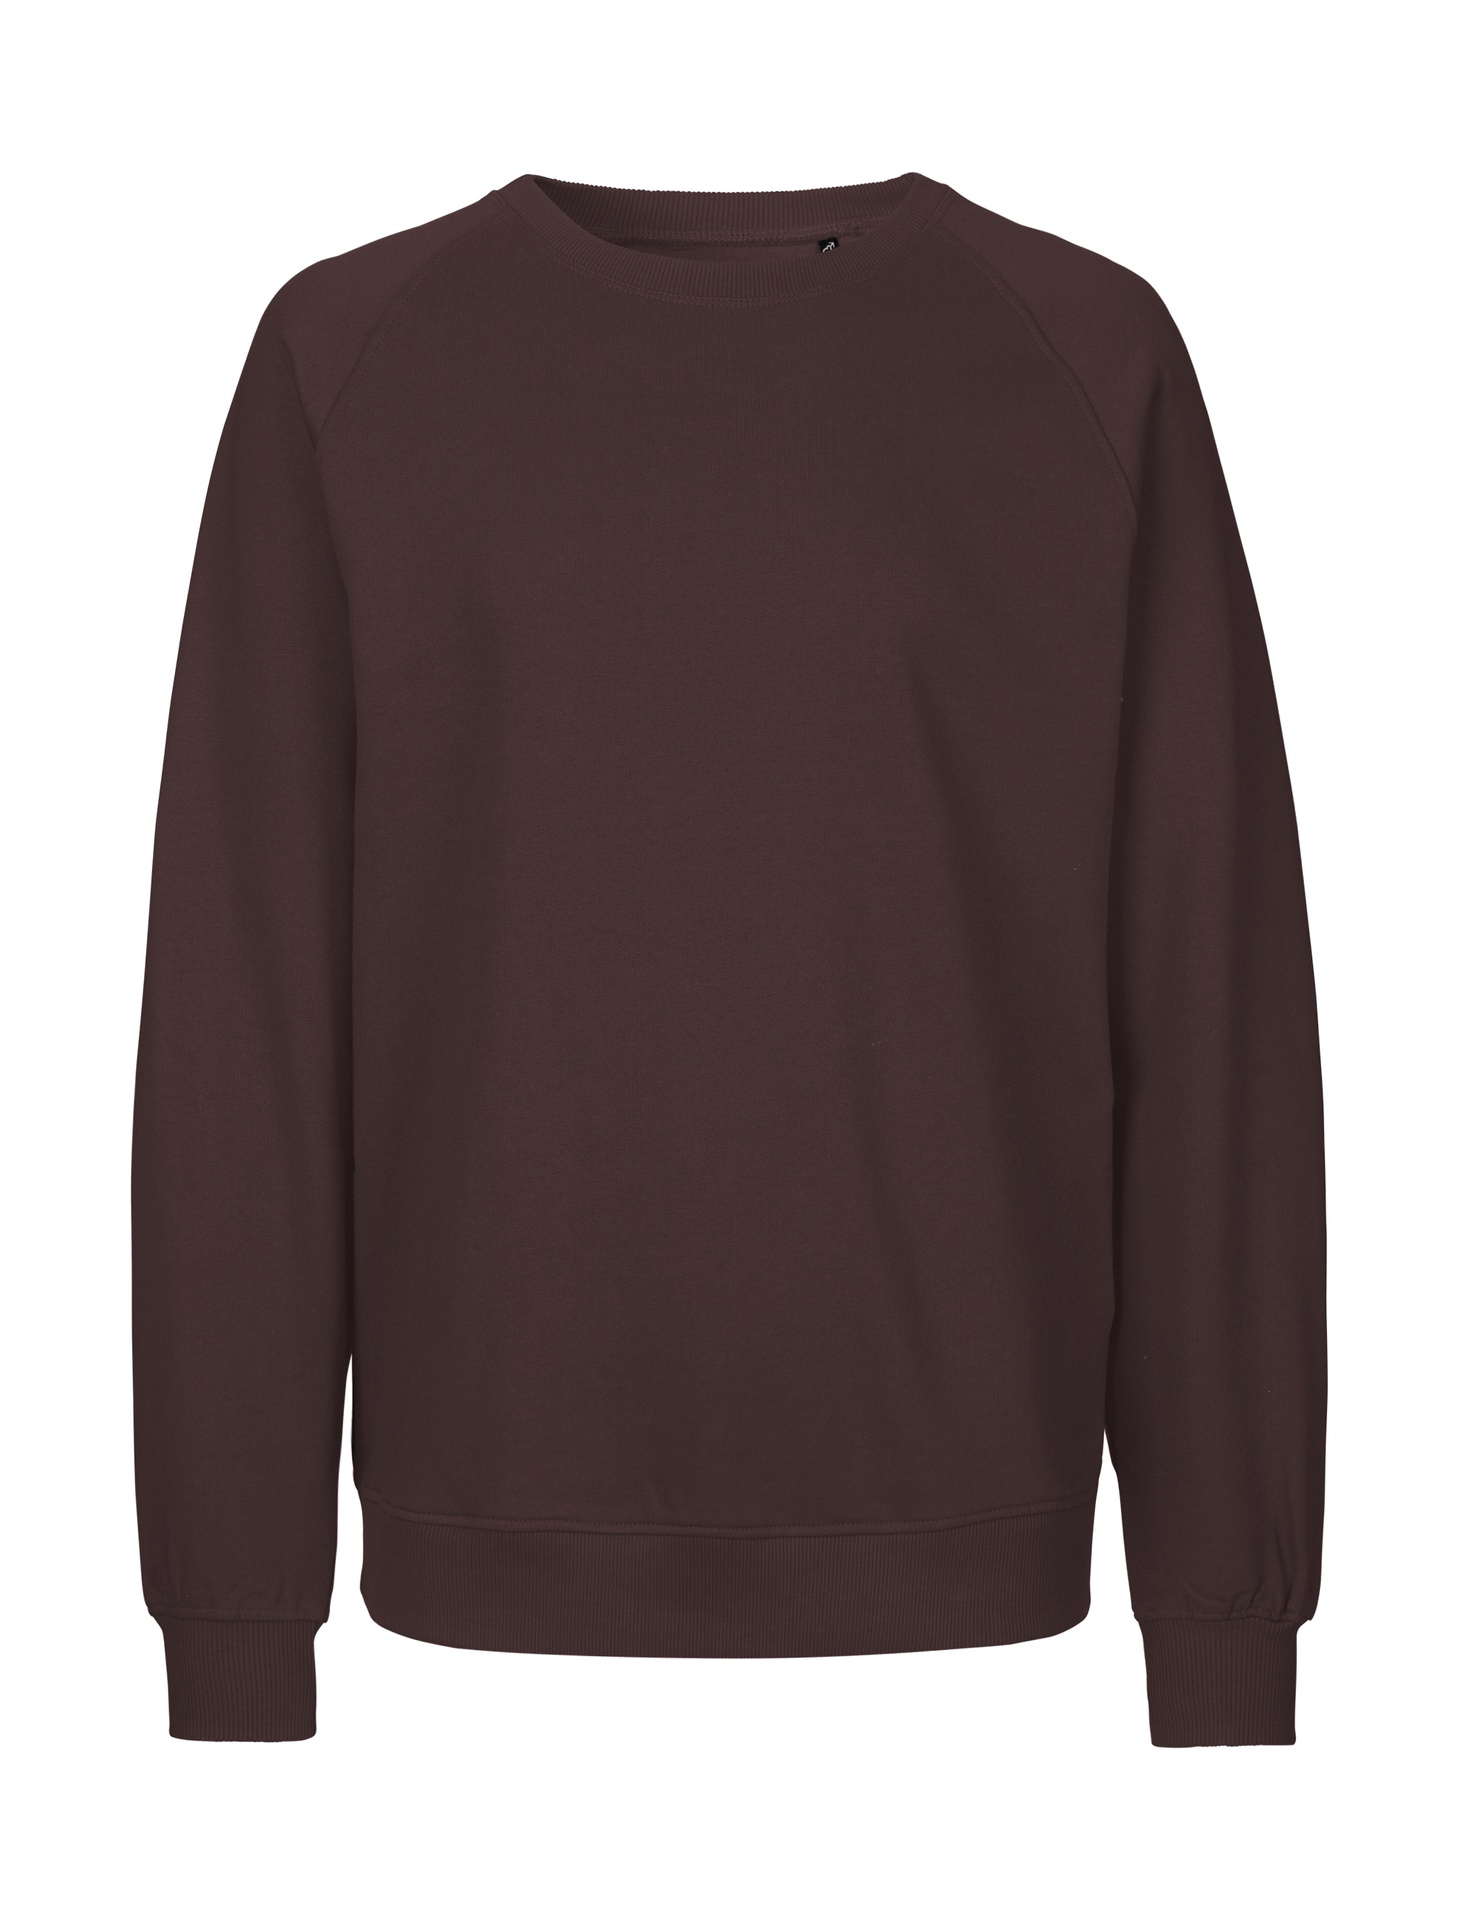 [PR/02811] Unisex Sweatshirt (Brown 37, 3XL)